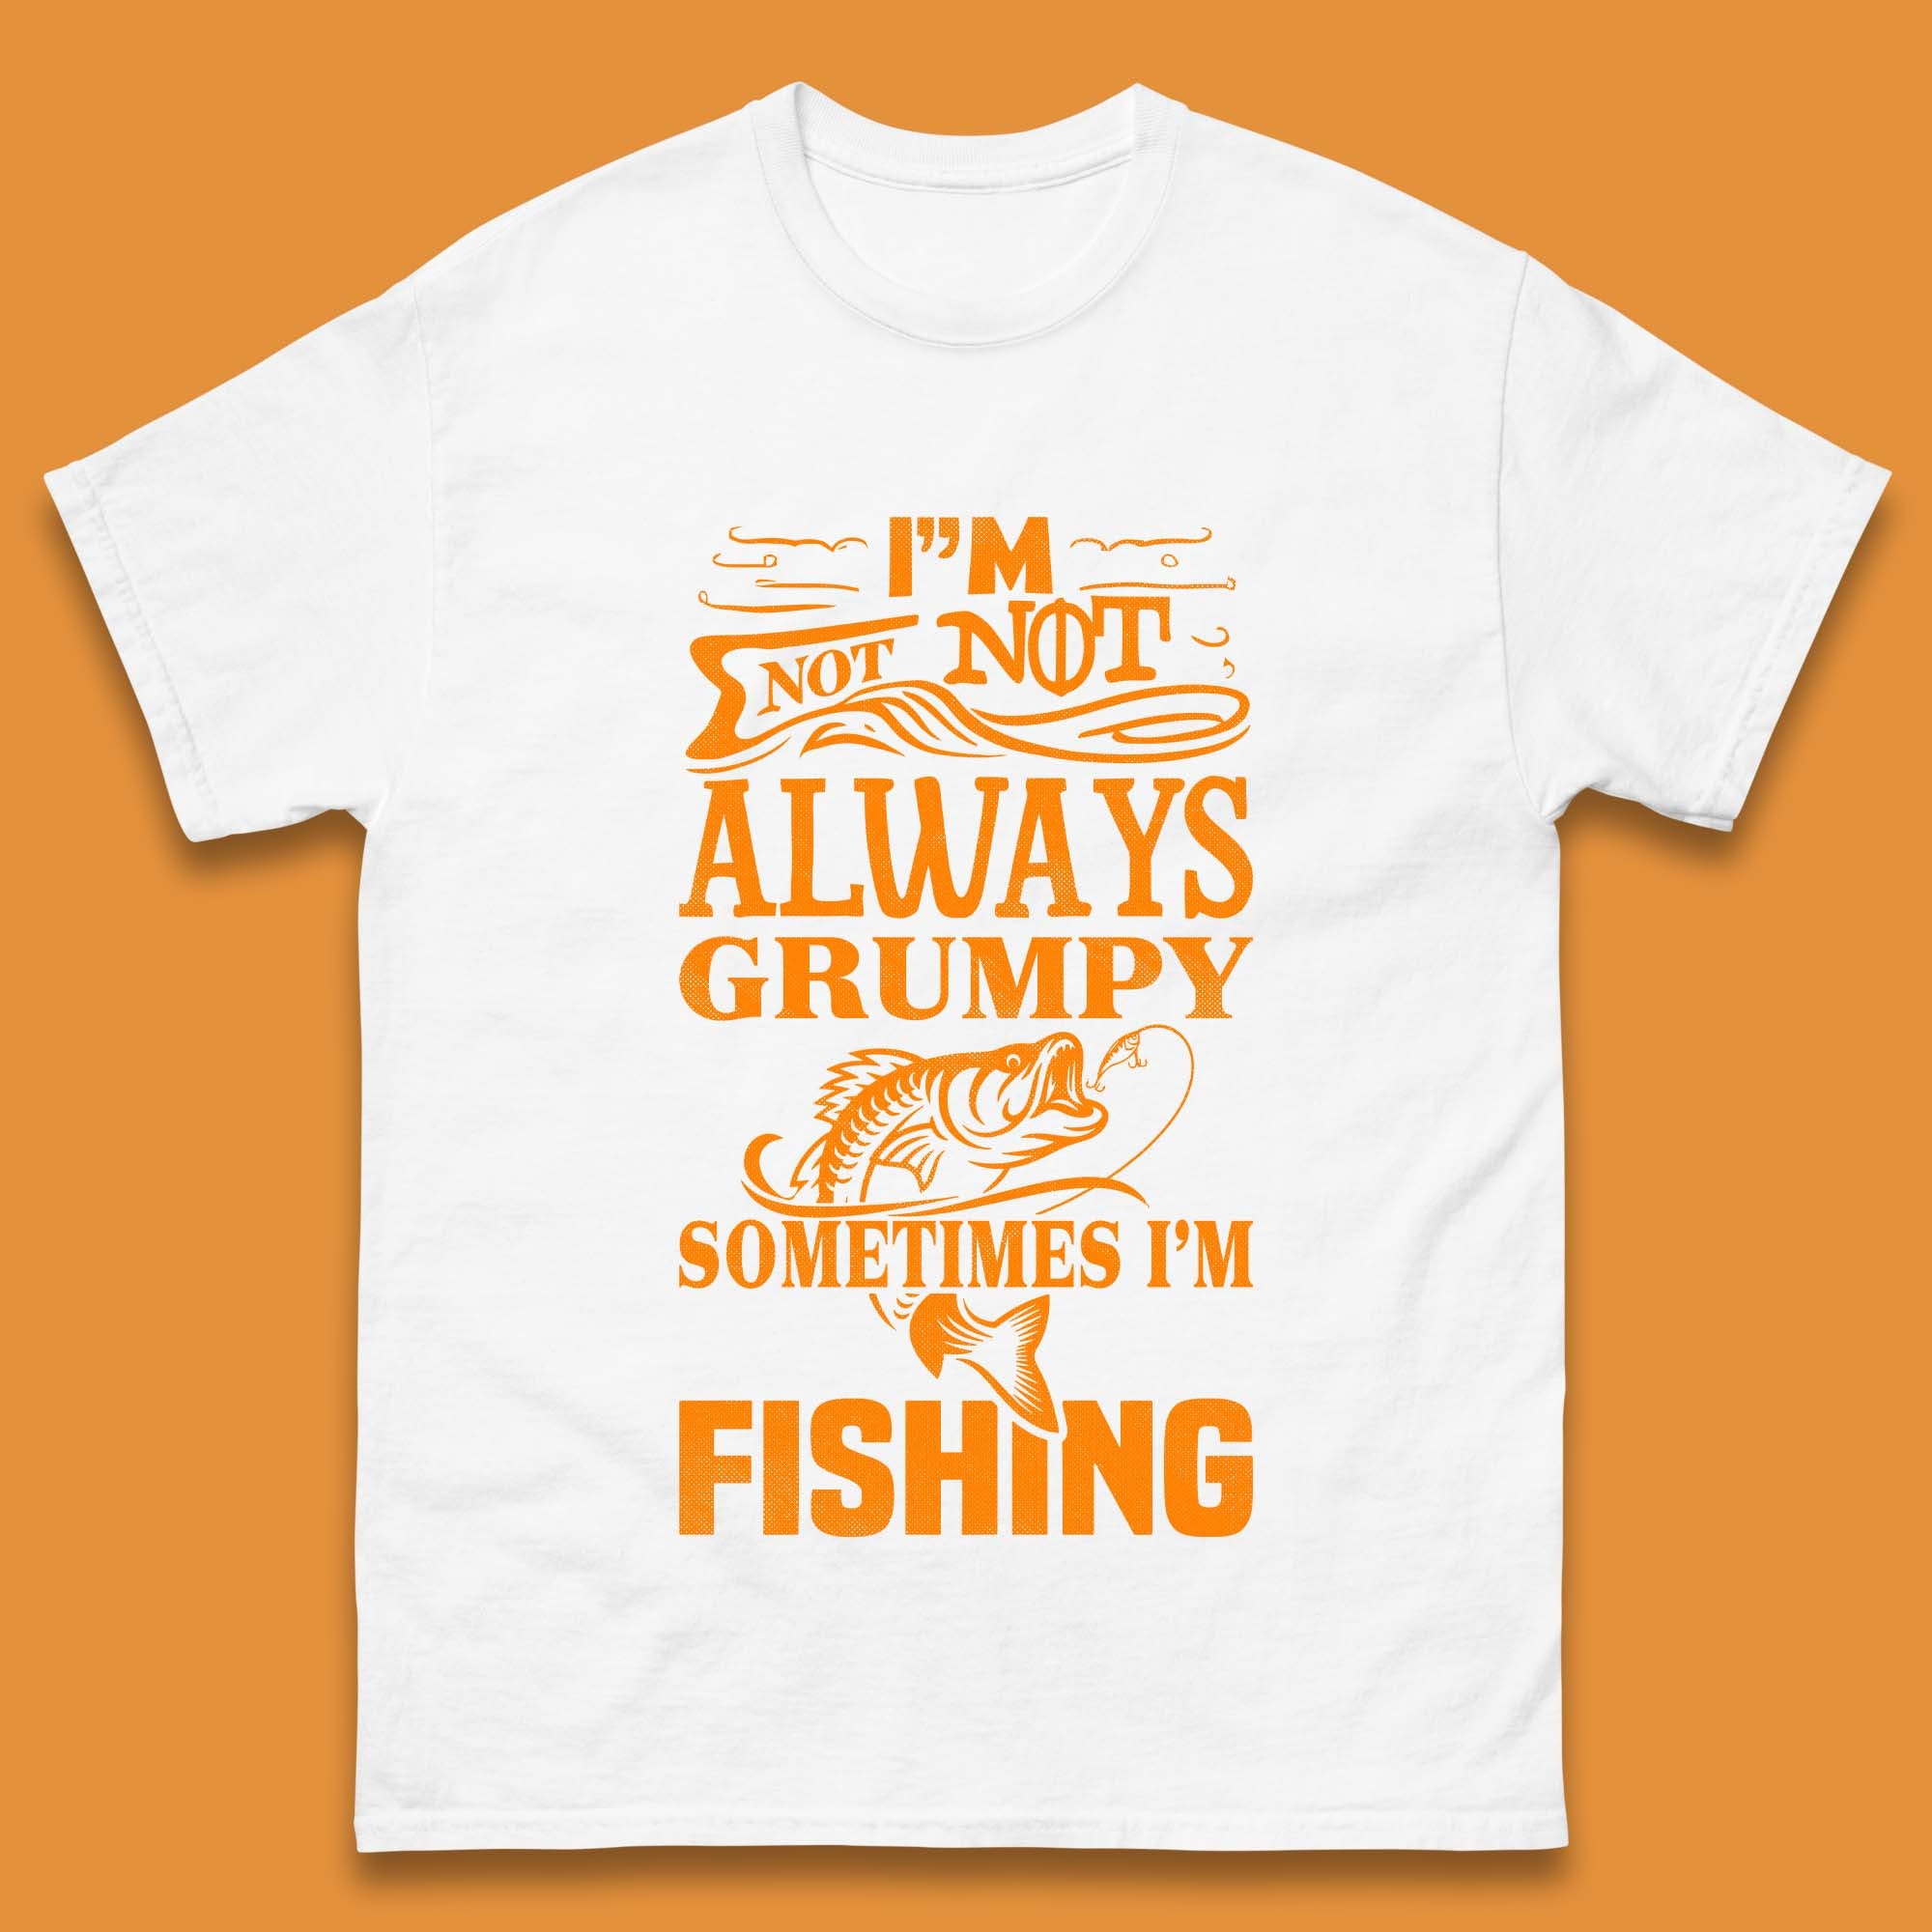 Fishing Shirt Short Sleeve Fisherman Funny Adult Humor